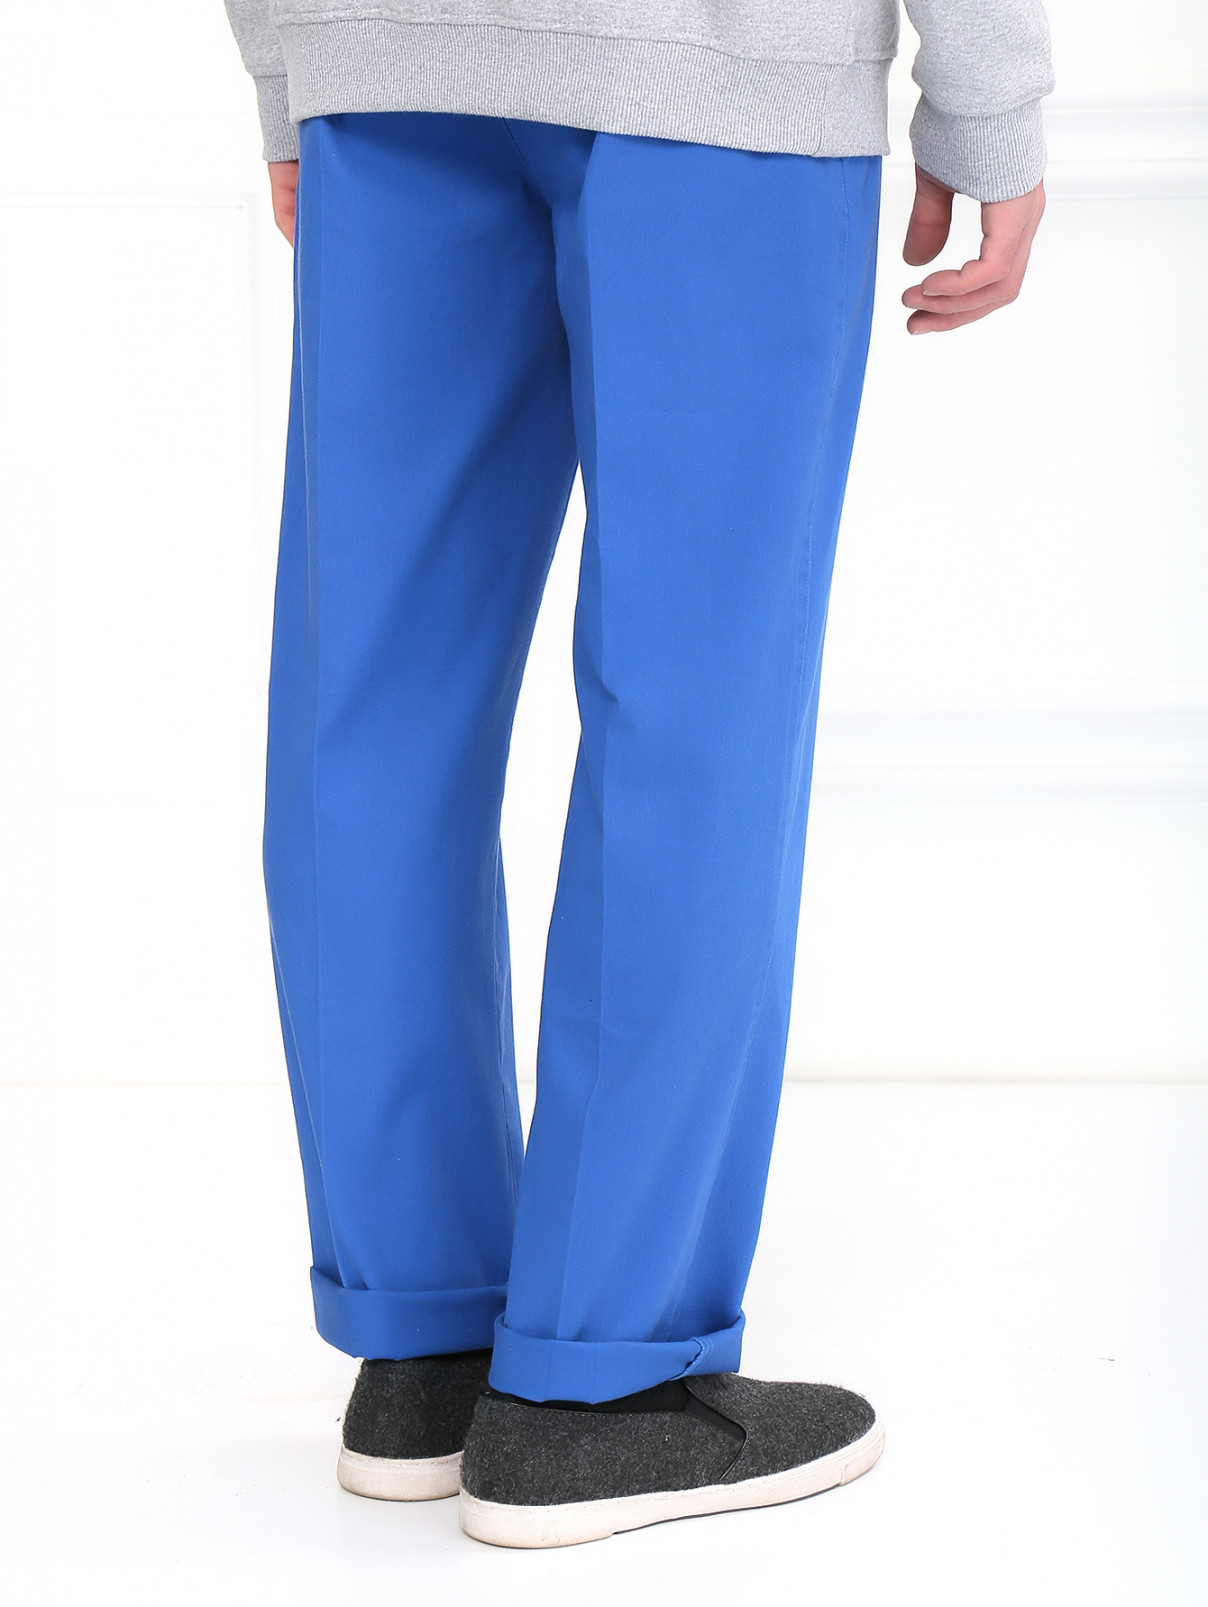 Брюки из хлопка с боковыми карманами Sochi 2014  –  Модель Верх-Низ1  – Цвет:  Синий